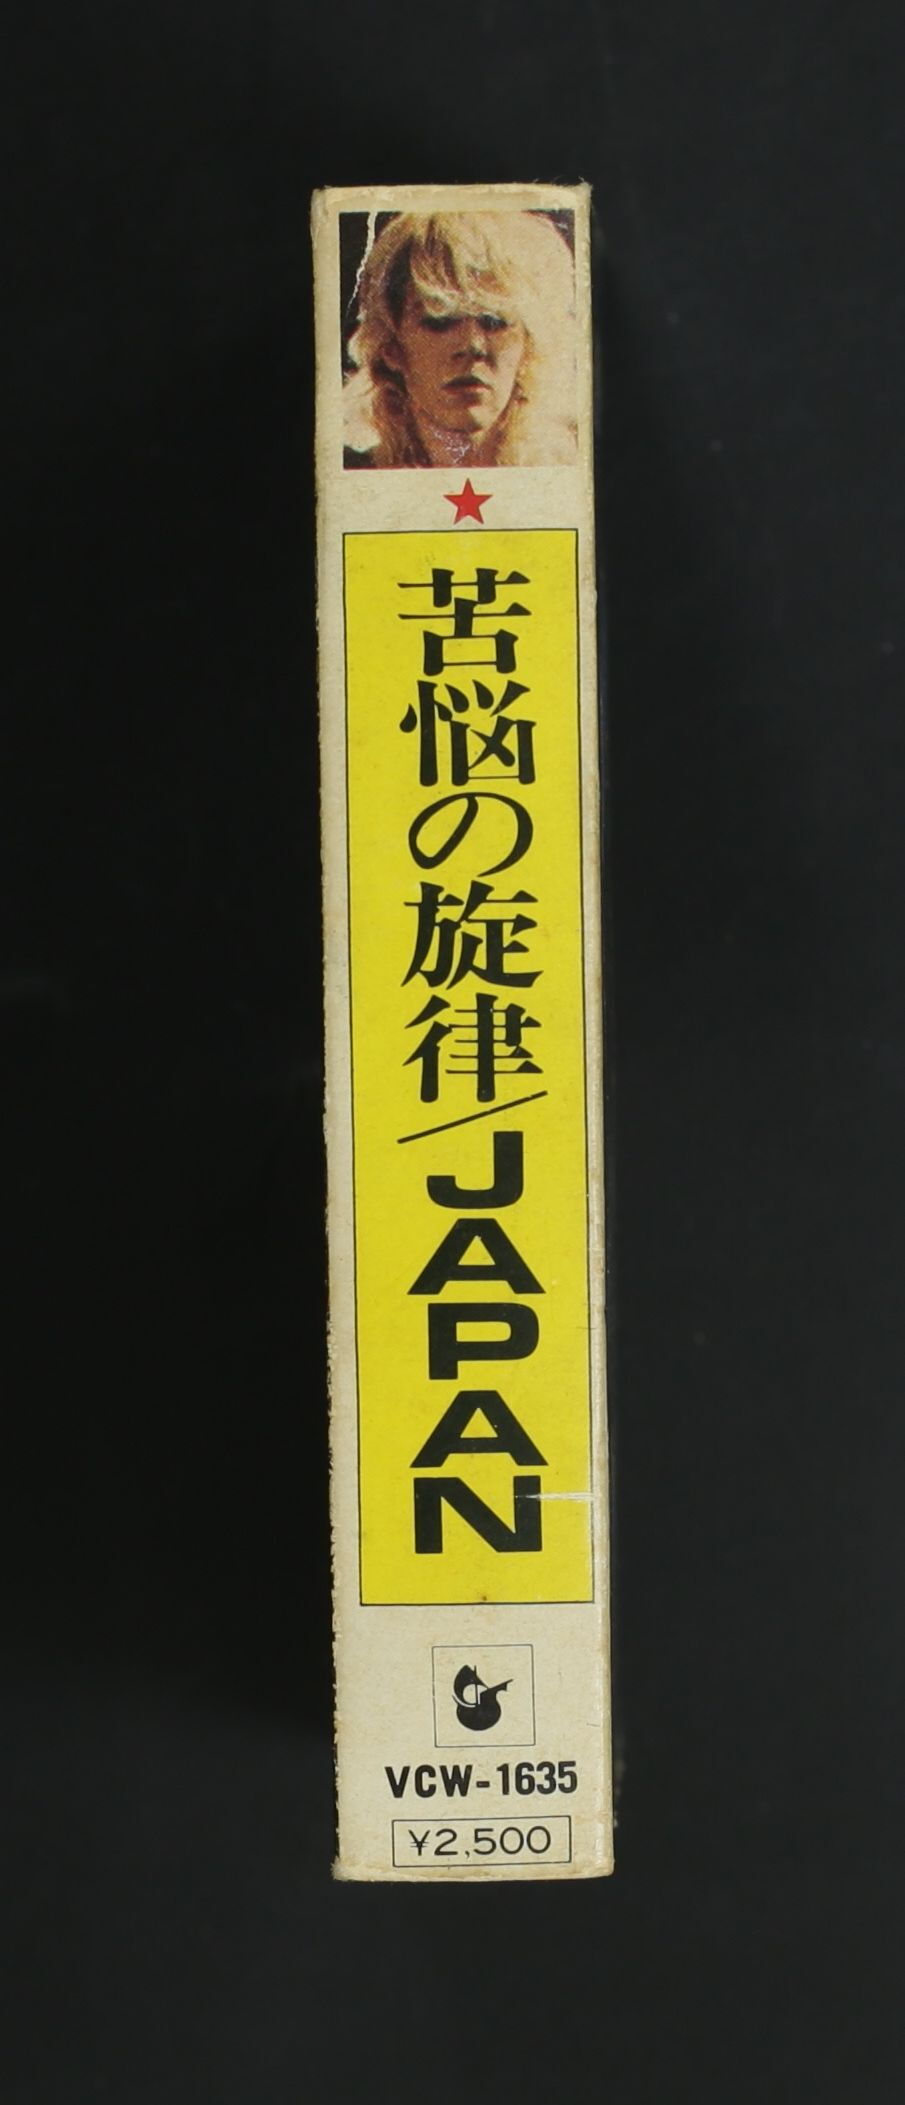 ジャパン JAPAN / 苦悩の旋律 OBSCURE ALTERNATIVES